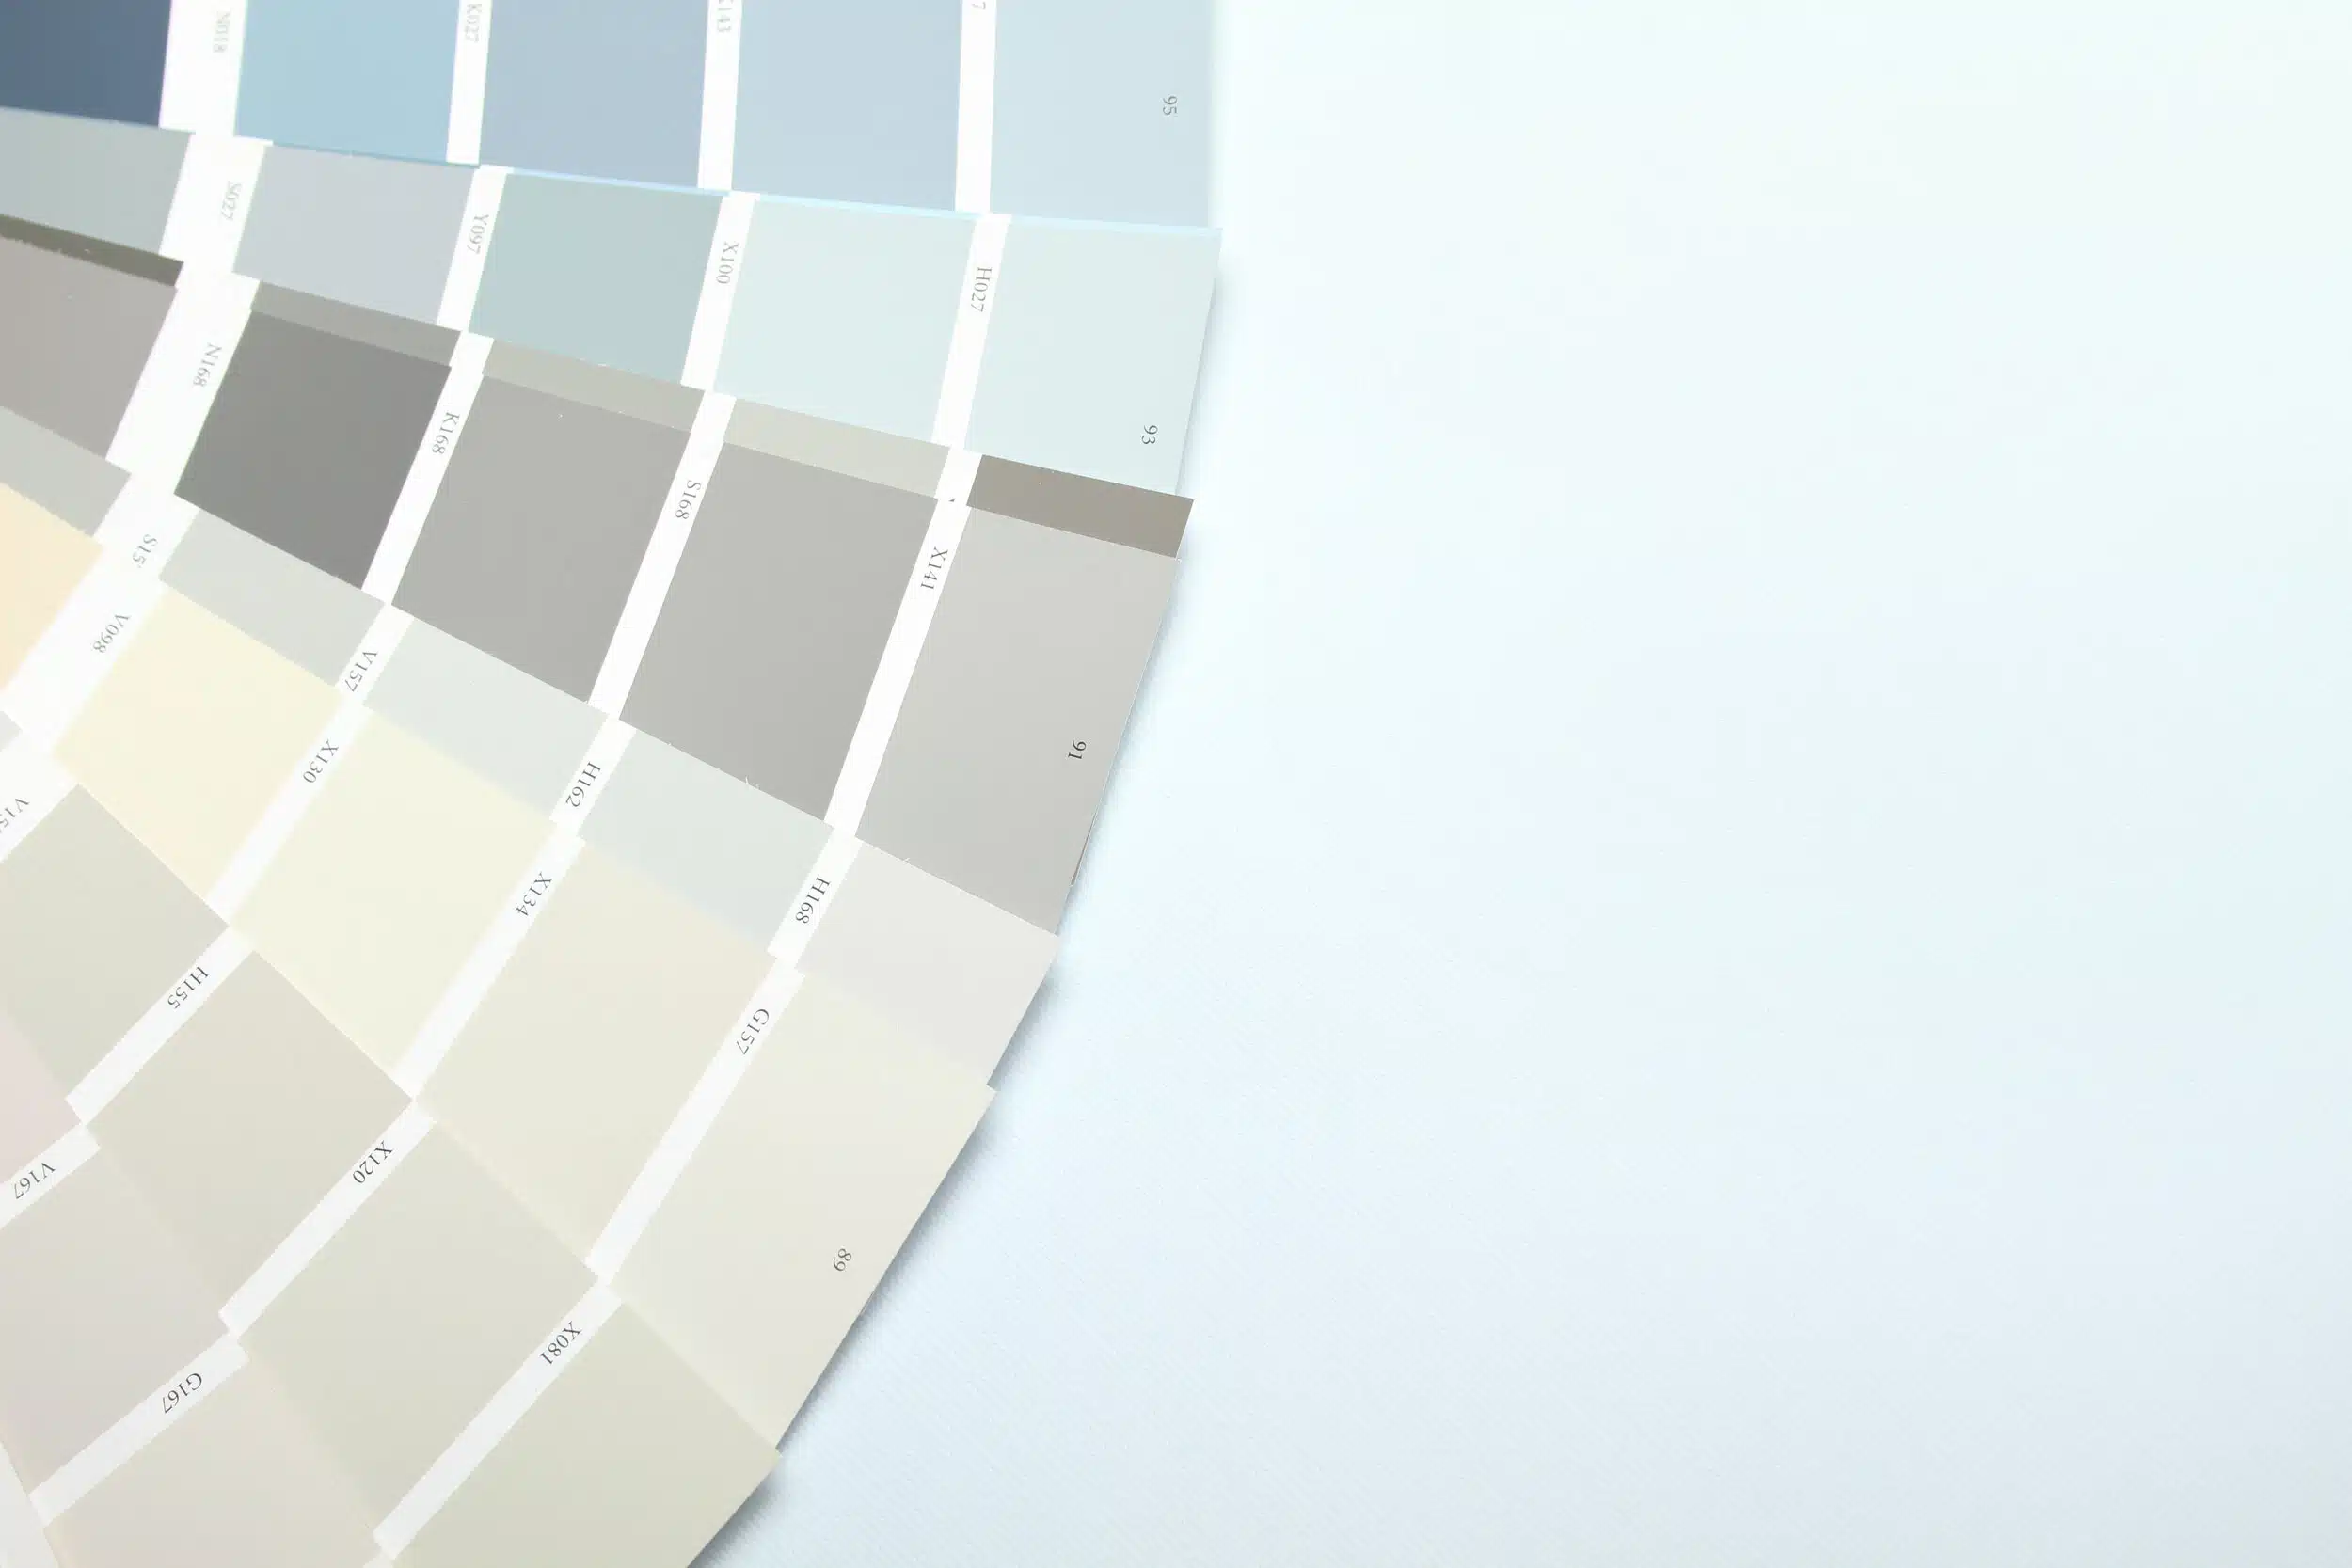 Palette of Interior Design Paint Colors